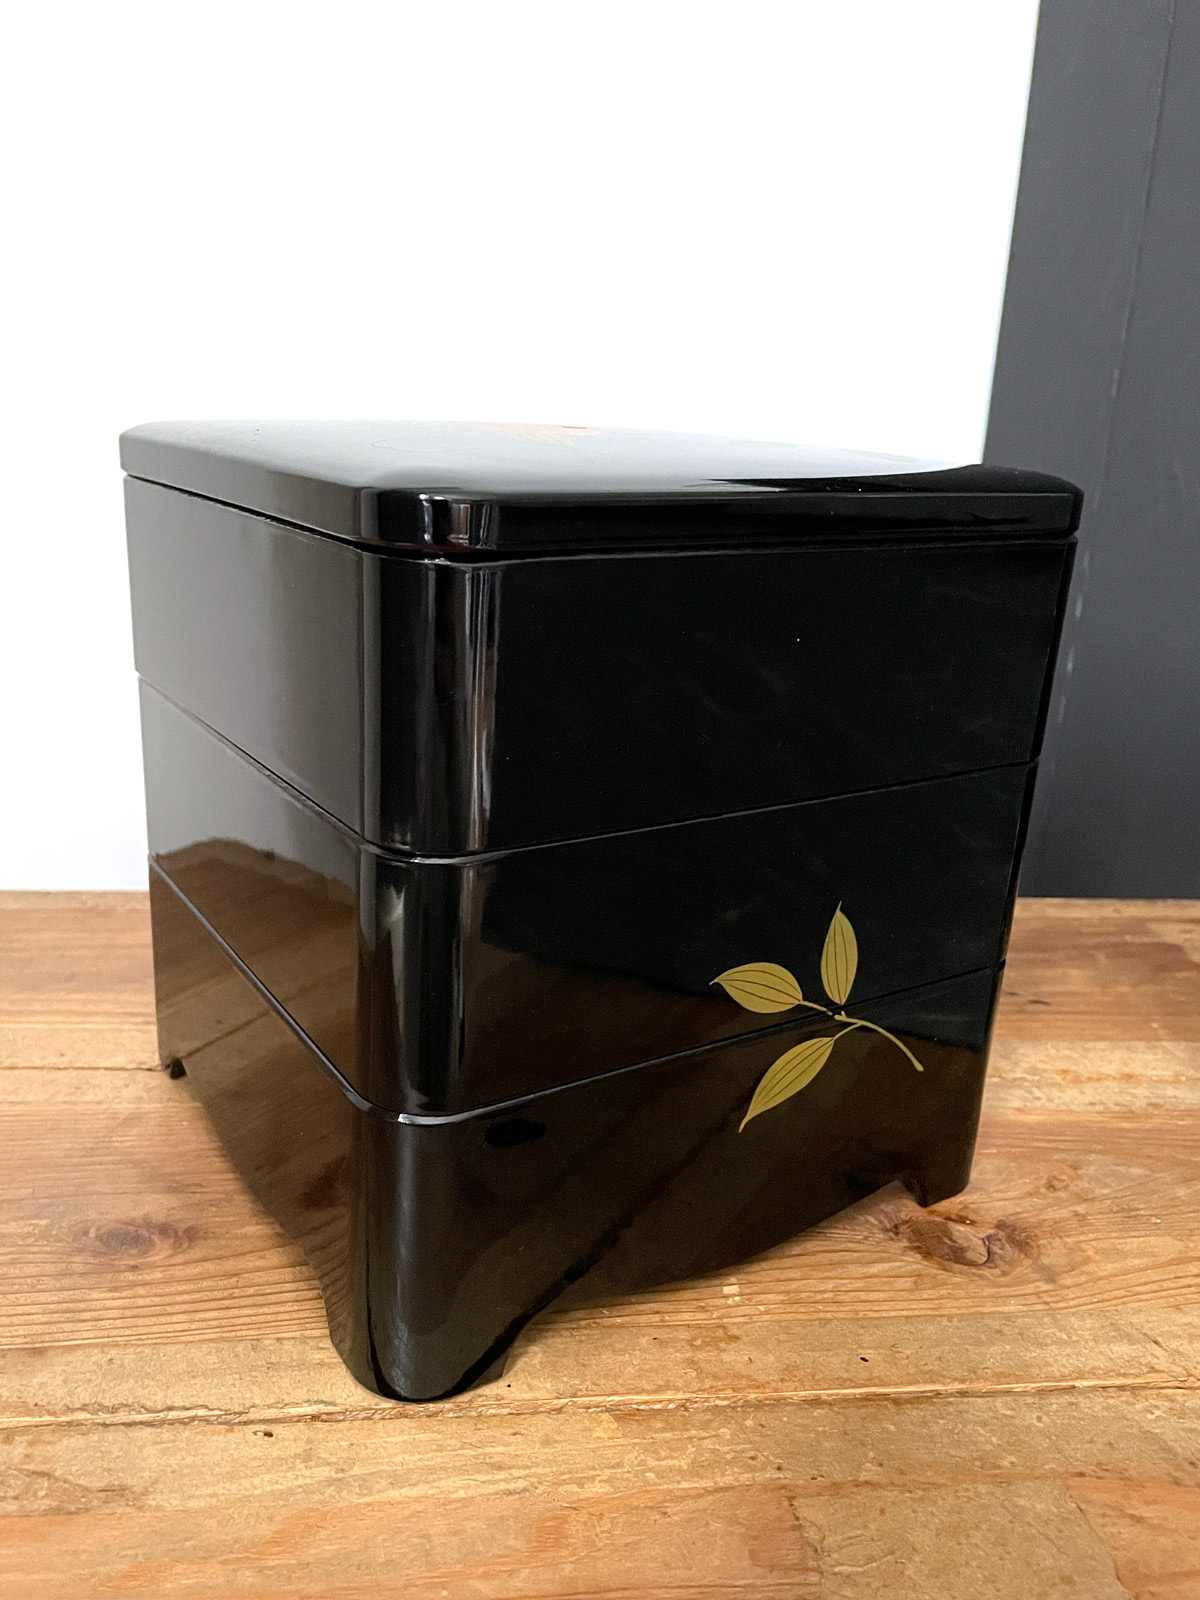 Jubako – lacquerware 3-layered box with flowerdesign